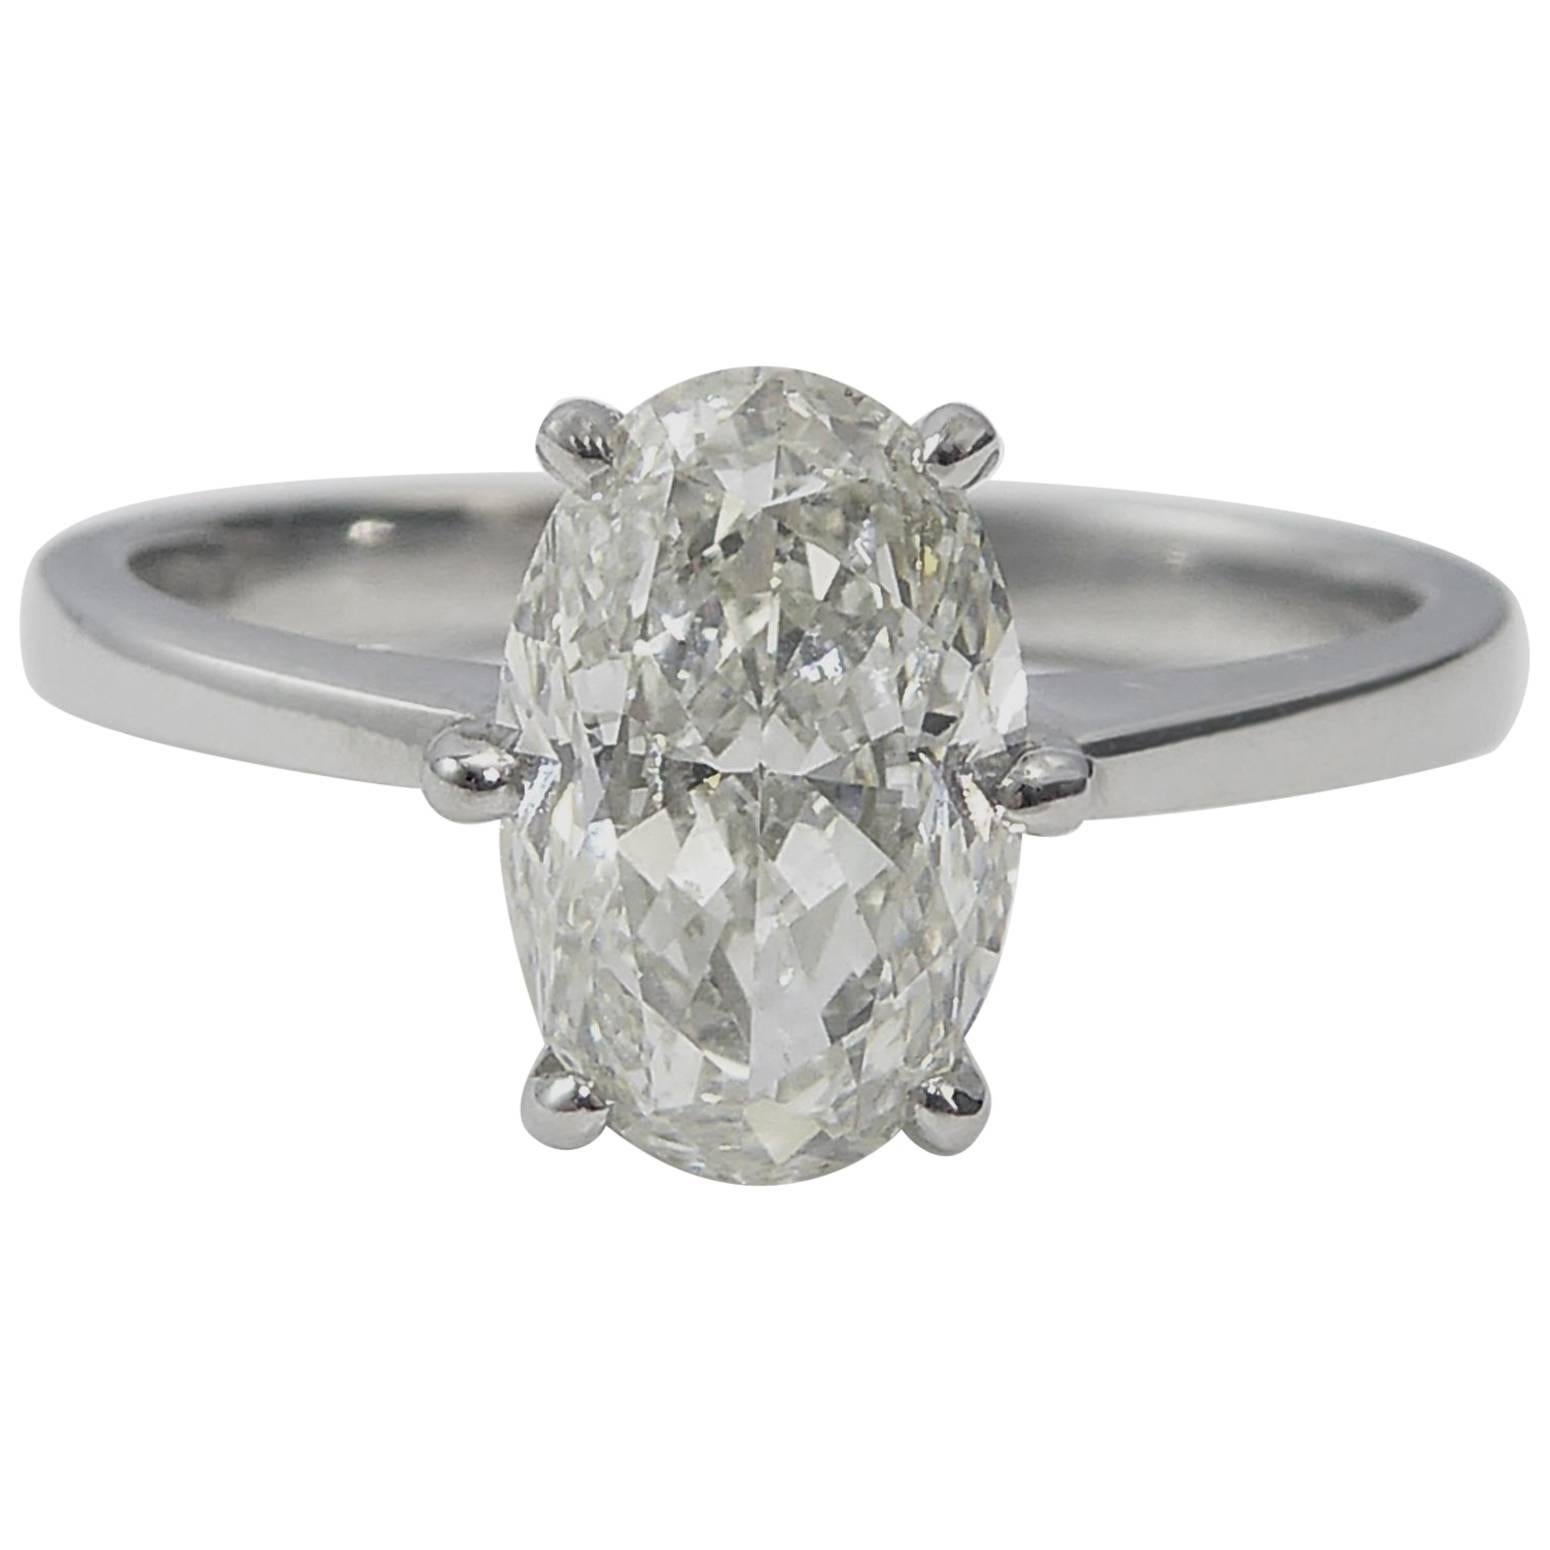 Oval Diamond Engagement Ring, 1.51 Carat Brilliant Cut Solitaire, Platinum